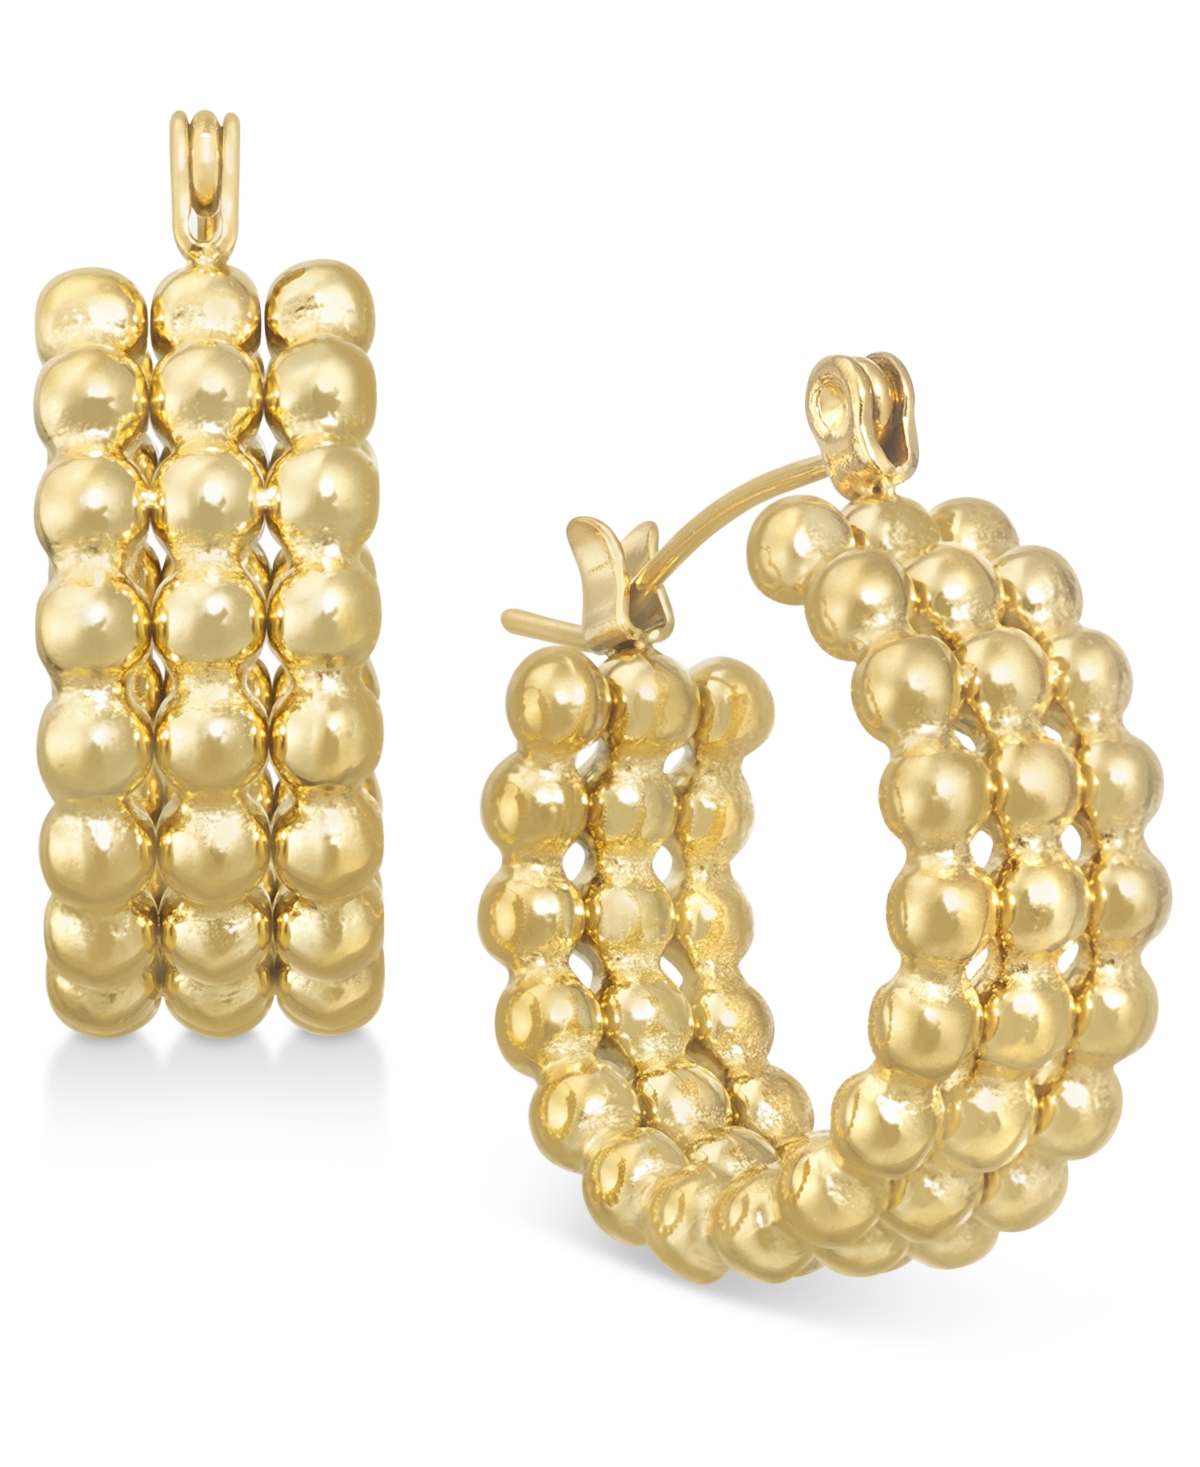 14k Gold-Plated Medium Triple-Row Beaded Hoop Earrings - Gold